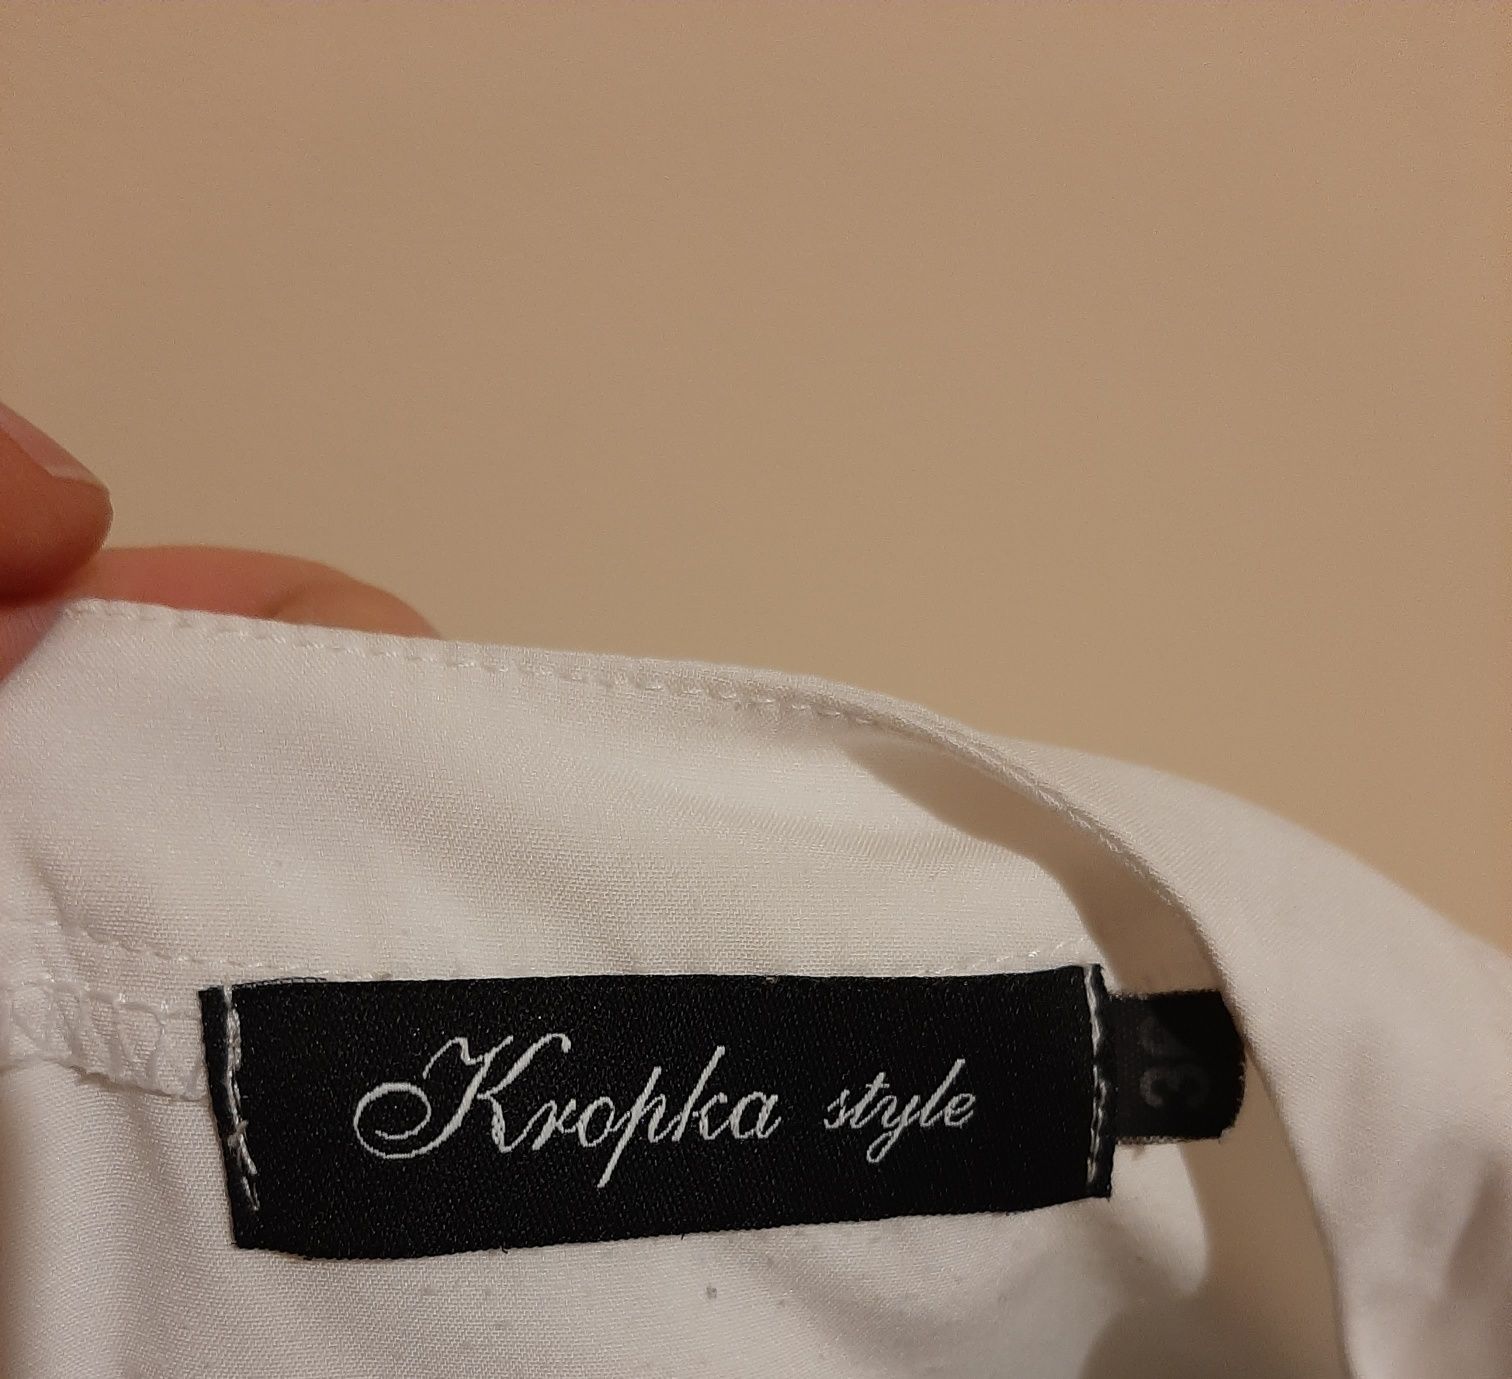 Bluzka firmy Kropka style rozmiar M